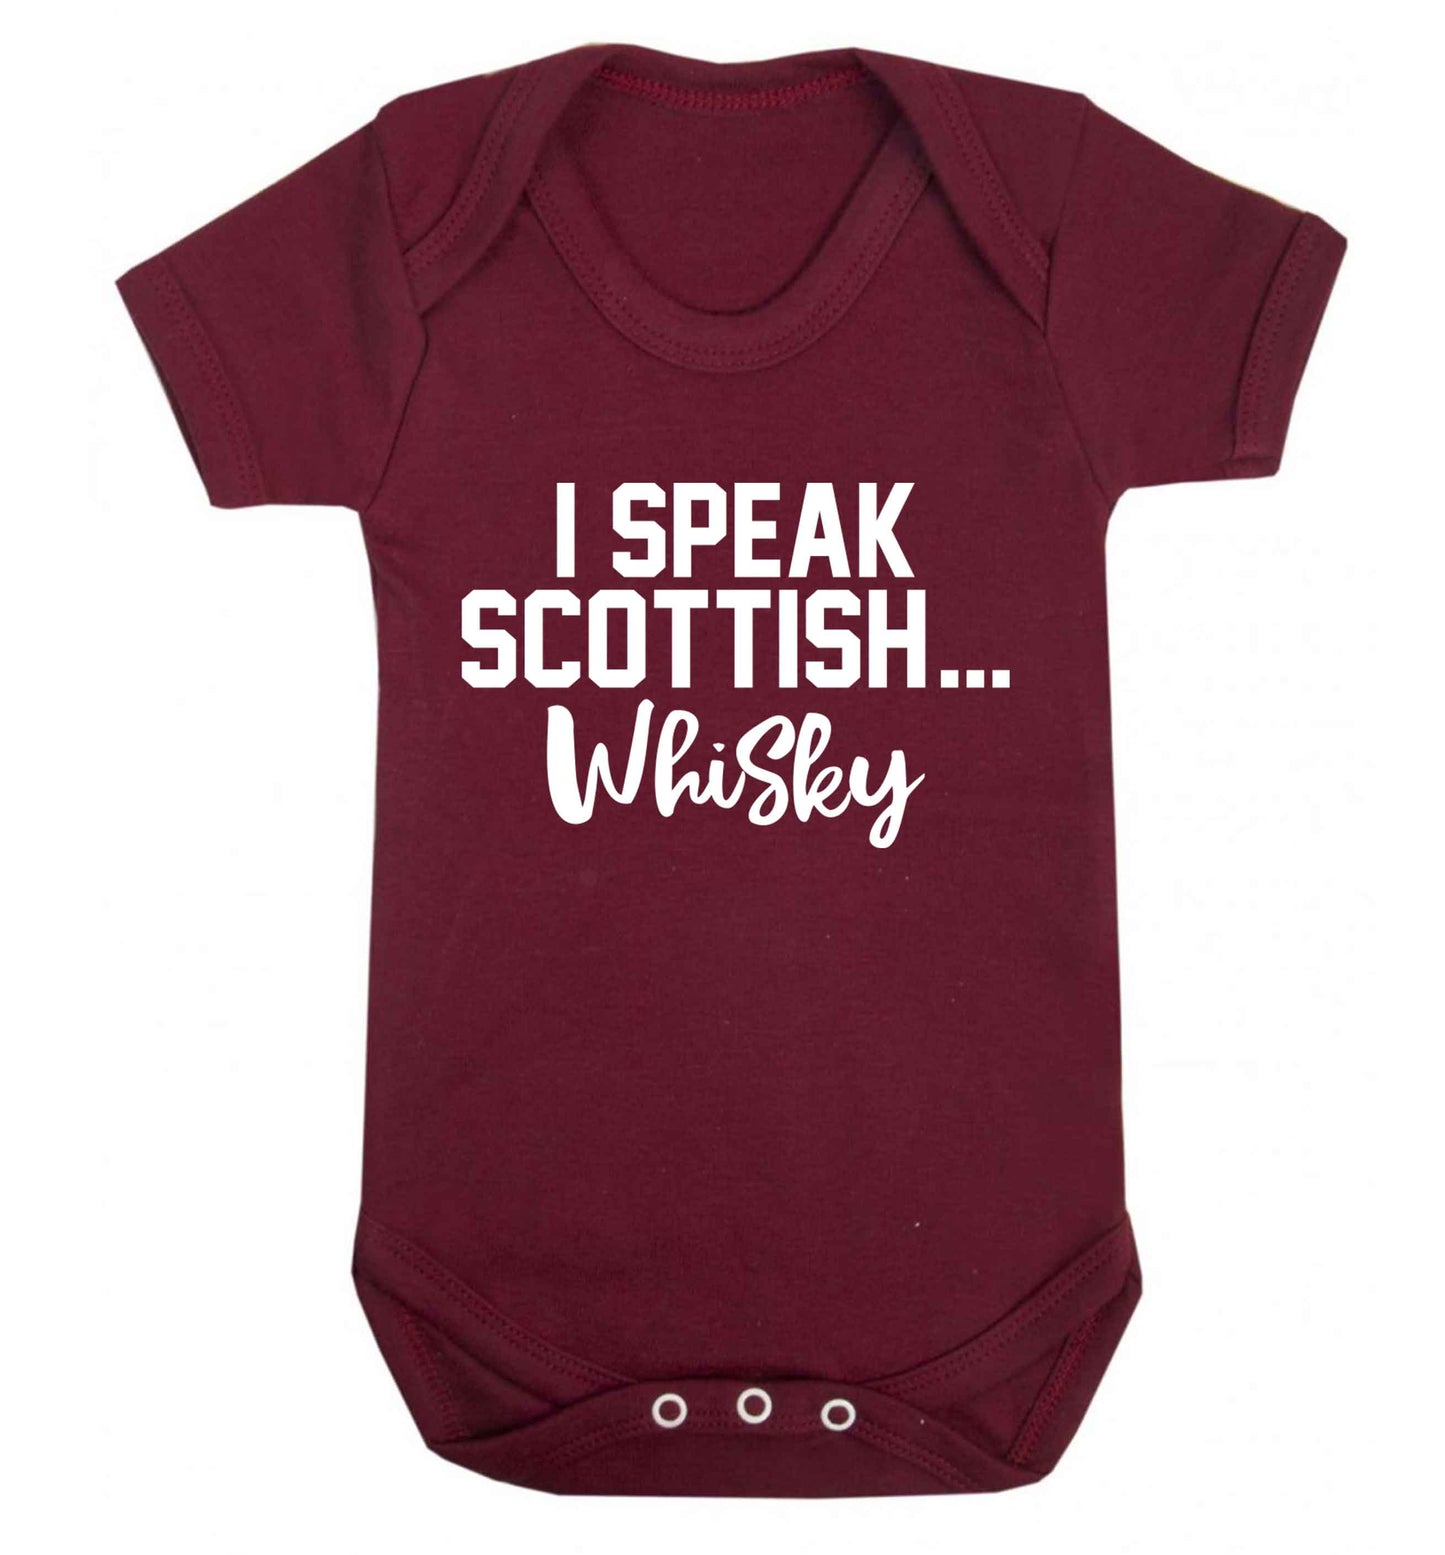 I speak scottish...whisky Baby Vest maroon 18-24 months